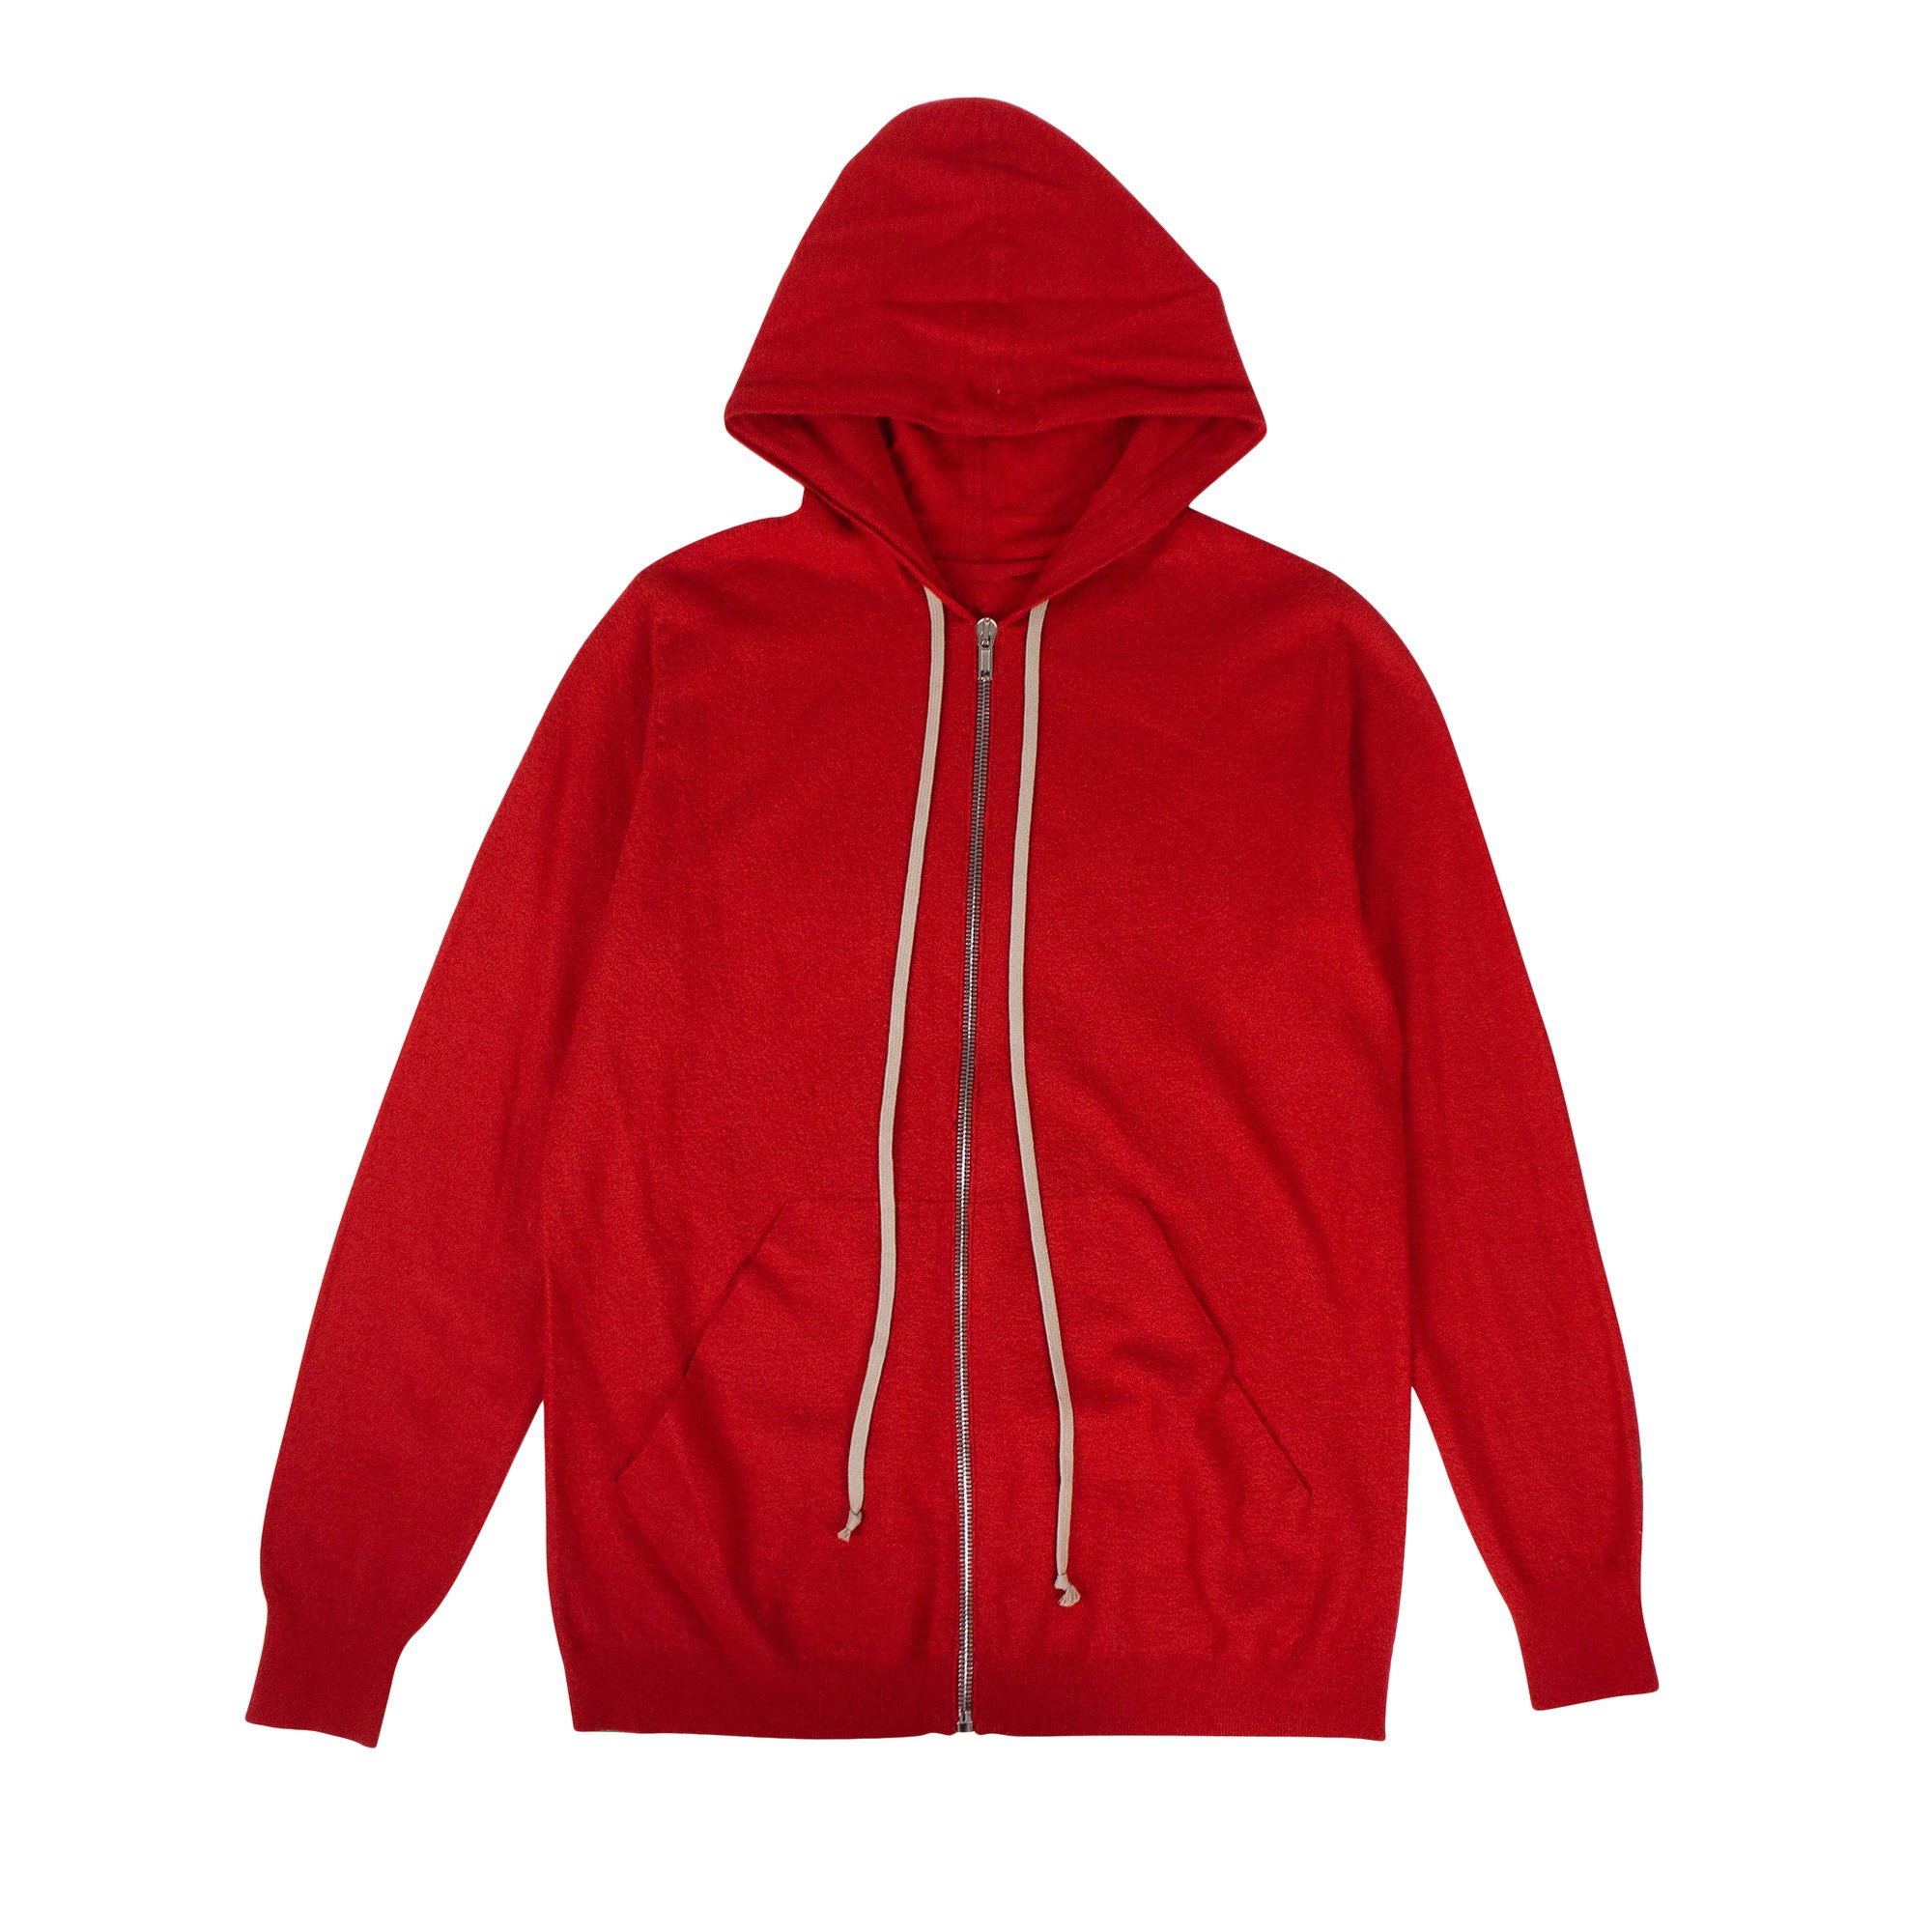 Buy Rick Owens Cashmere Zip Up Hoodie 'Cardinal Red' - RU19F4614 ...